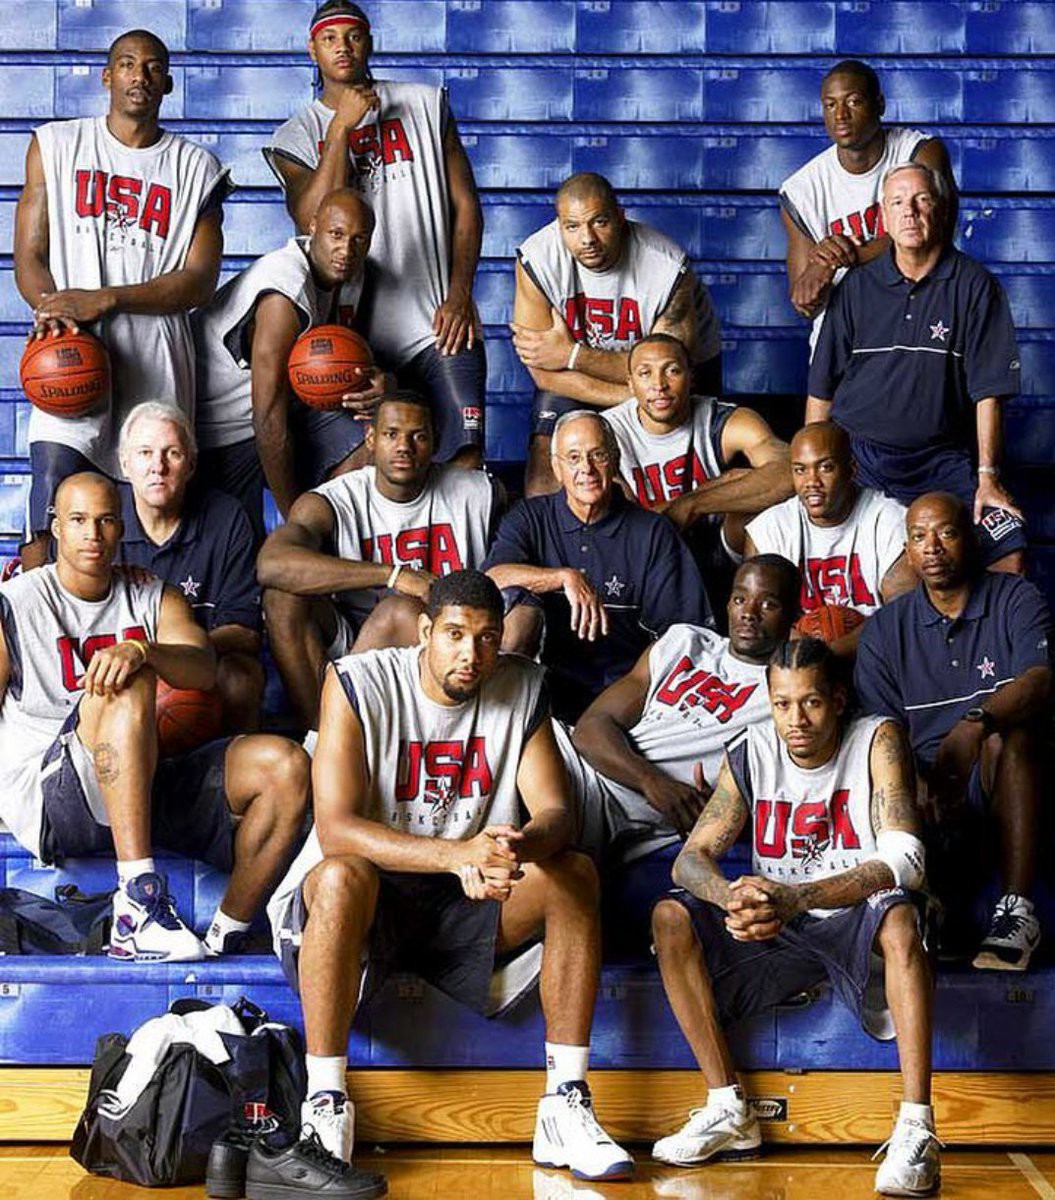 Những sự chắp vá đầy non nớt của đội hình tuyển Mỹ năm đó là một trong những biểu hiện cho sự tự phụ của nền bóng rổ Mỹ